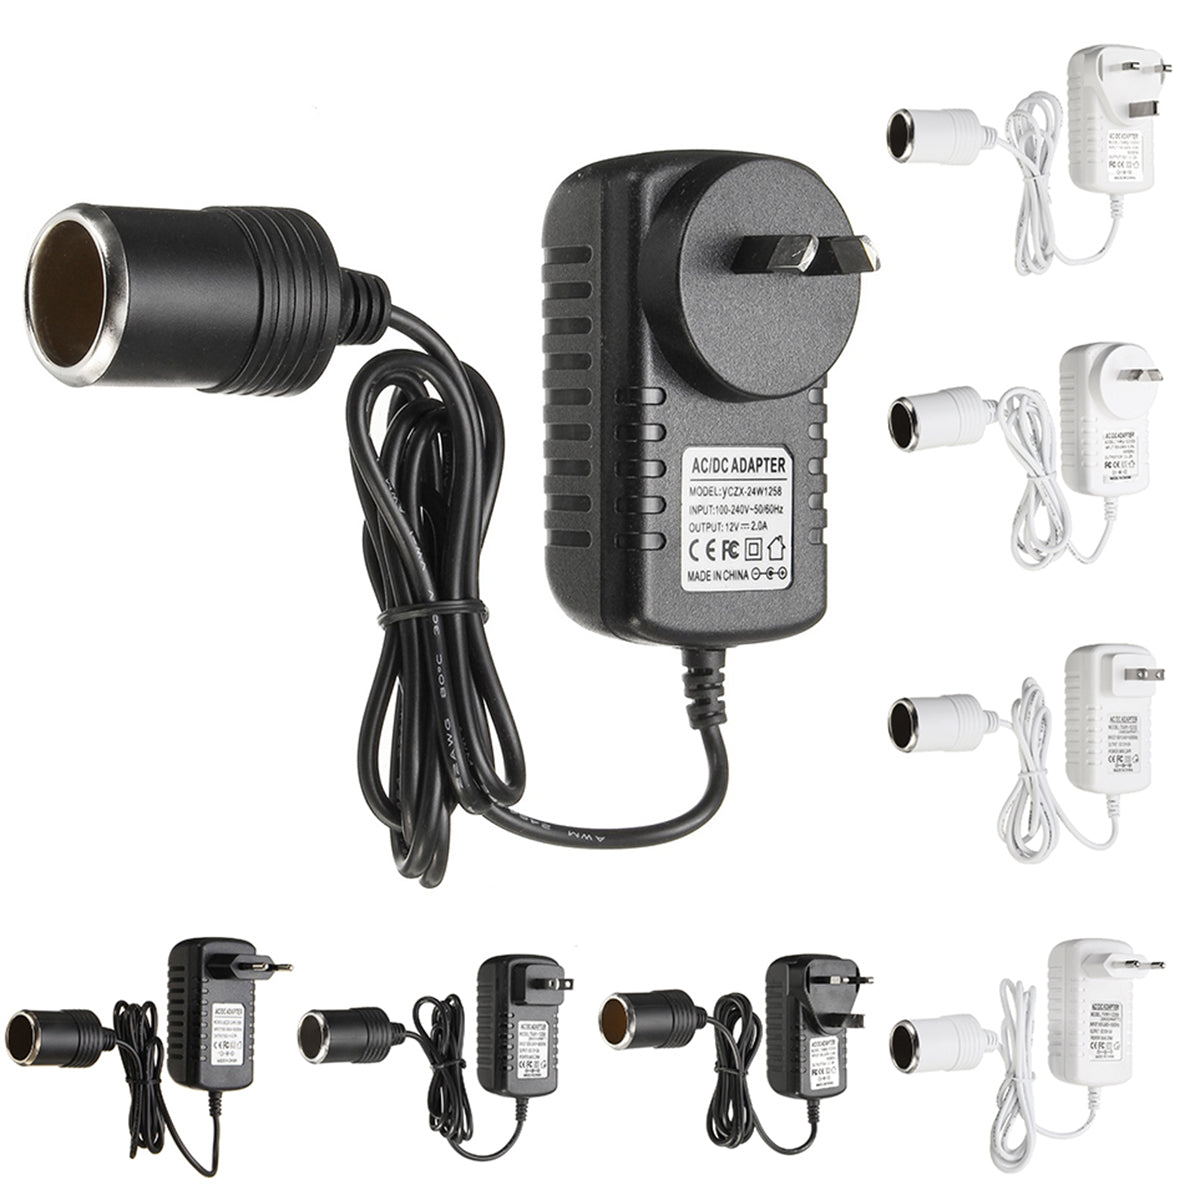 Dark Slate Gray AC 100-240V 2A to DC 12V Car Lighter Power Adapter Voltage Converter Power Supply Socket